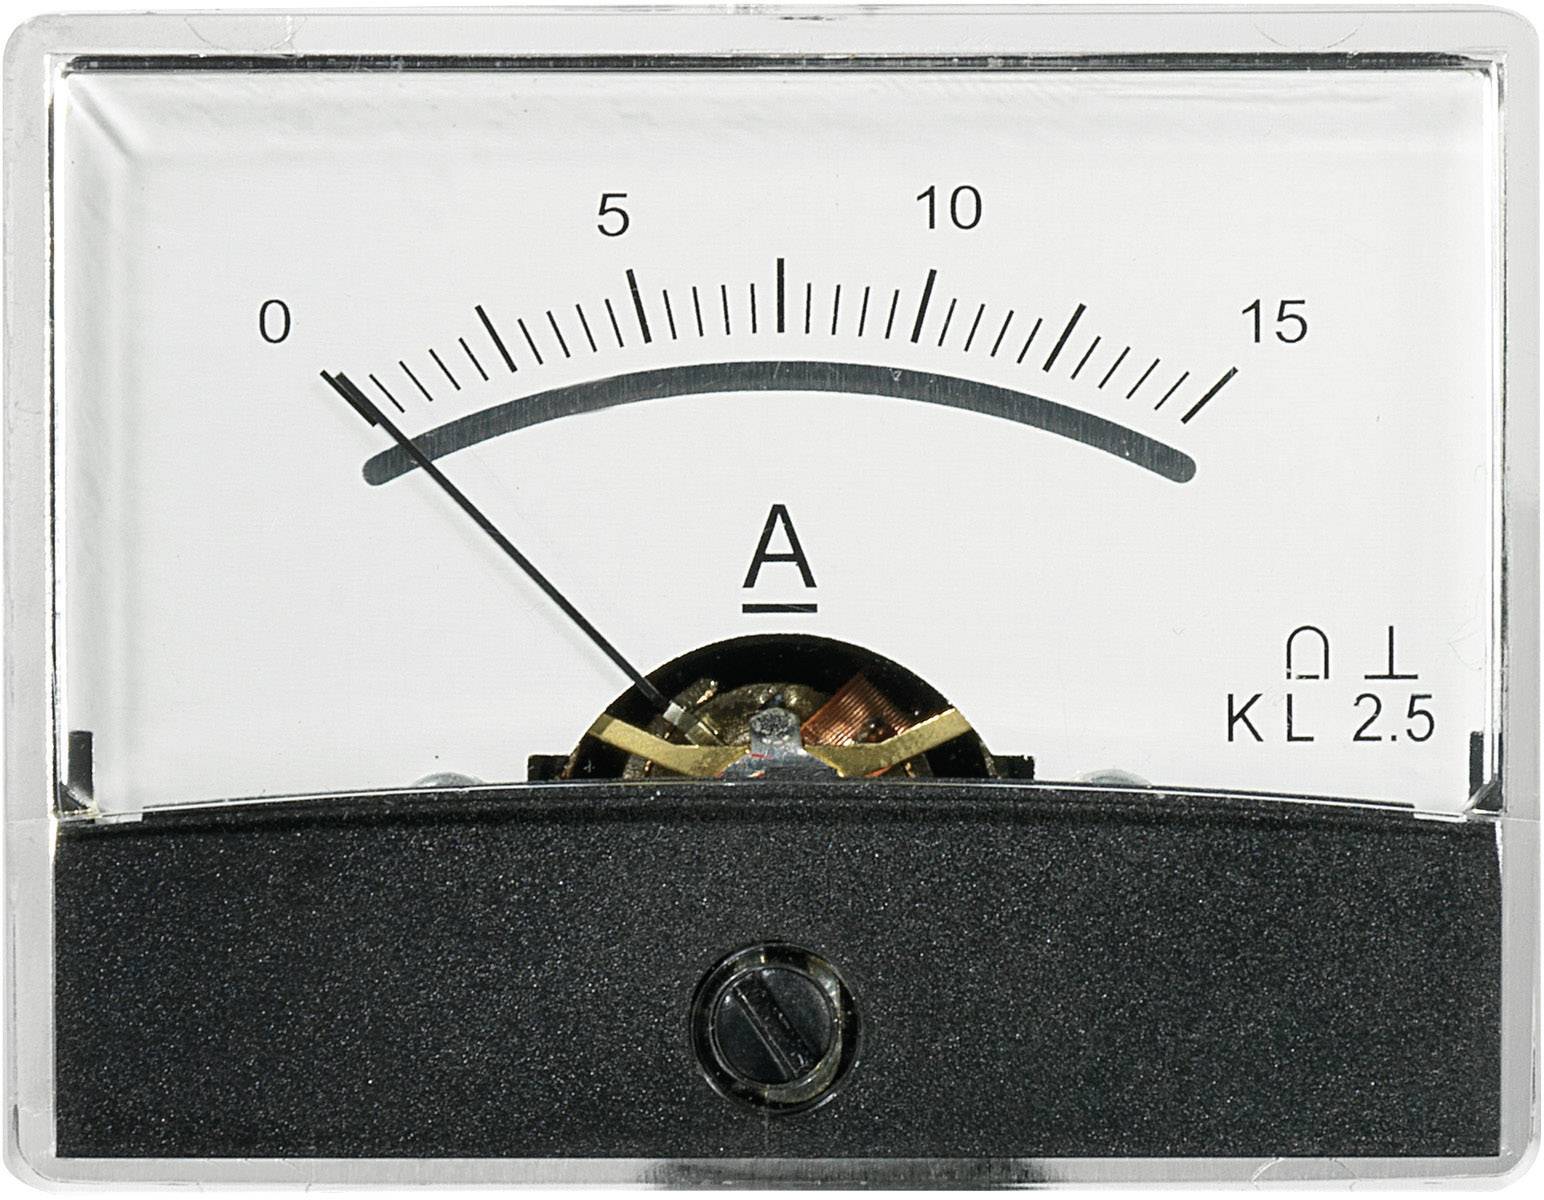 Einbau Messinstrument Einbauinstrument Messgerät Analog Amperemeter 0-30mA AC